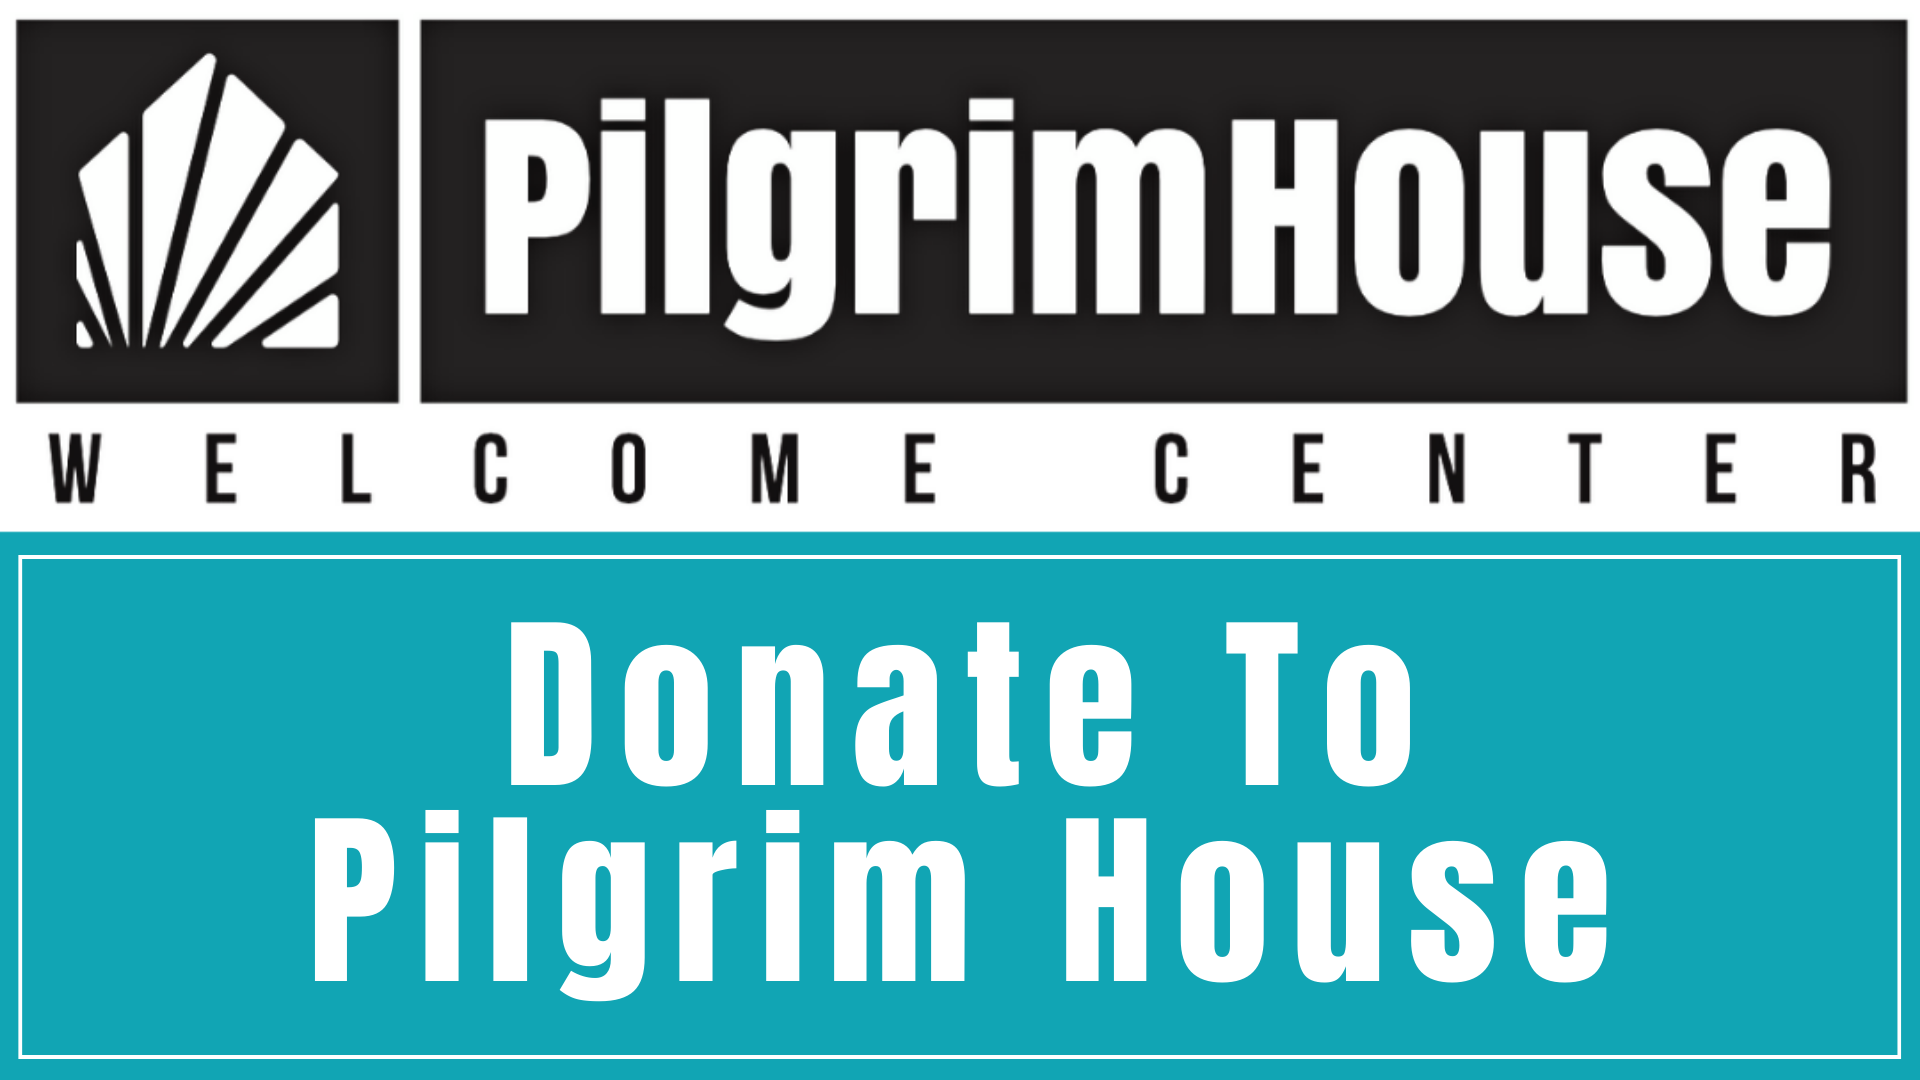 www.pilgrimhousesantiago.com